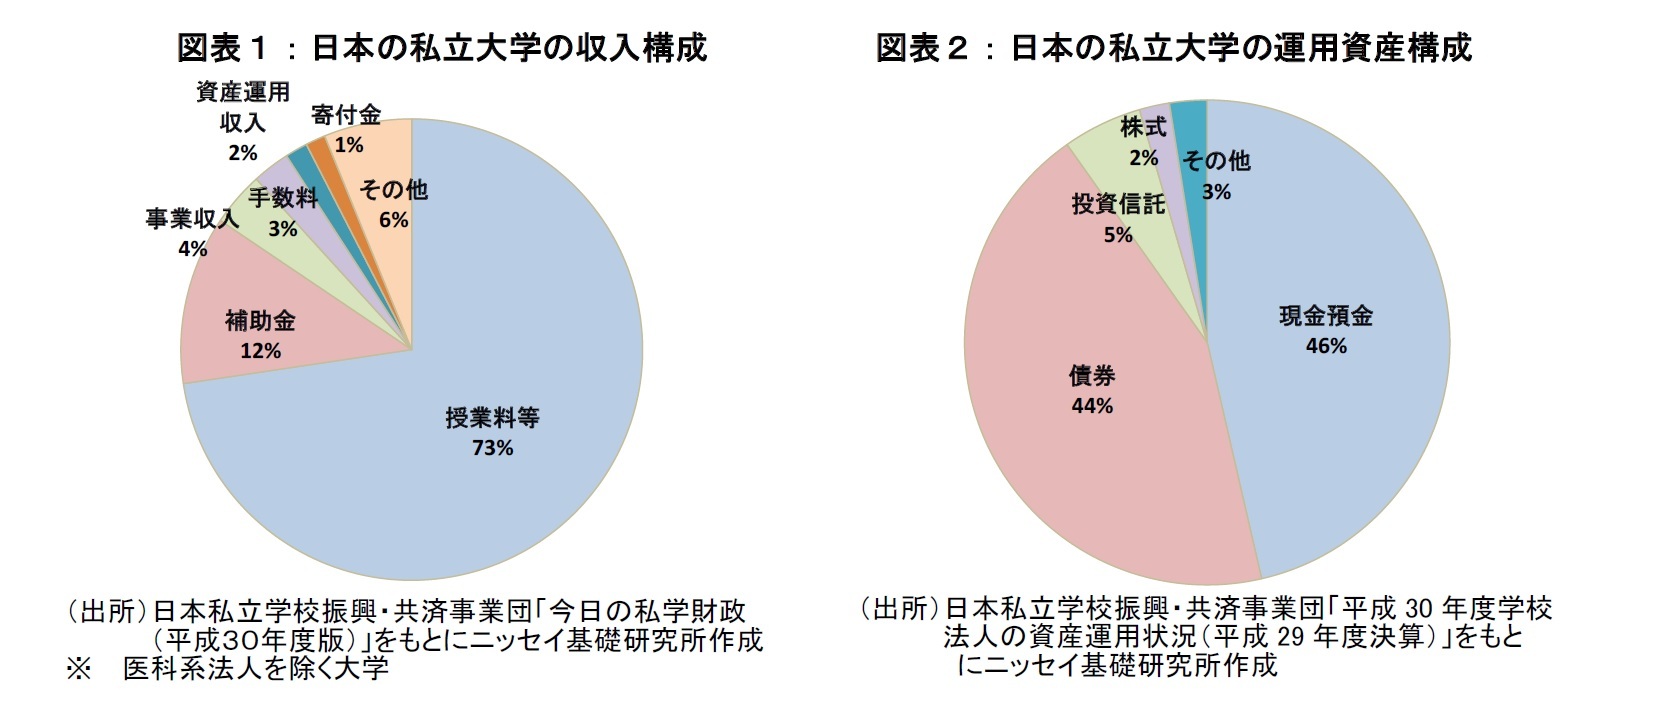 図表１：日本の私立大学の収入構成、図表２：日本の私立大学の運用資産構成